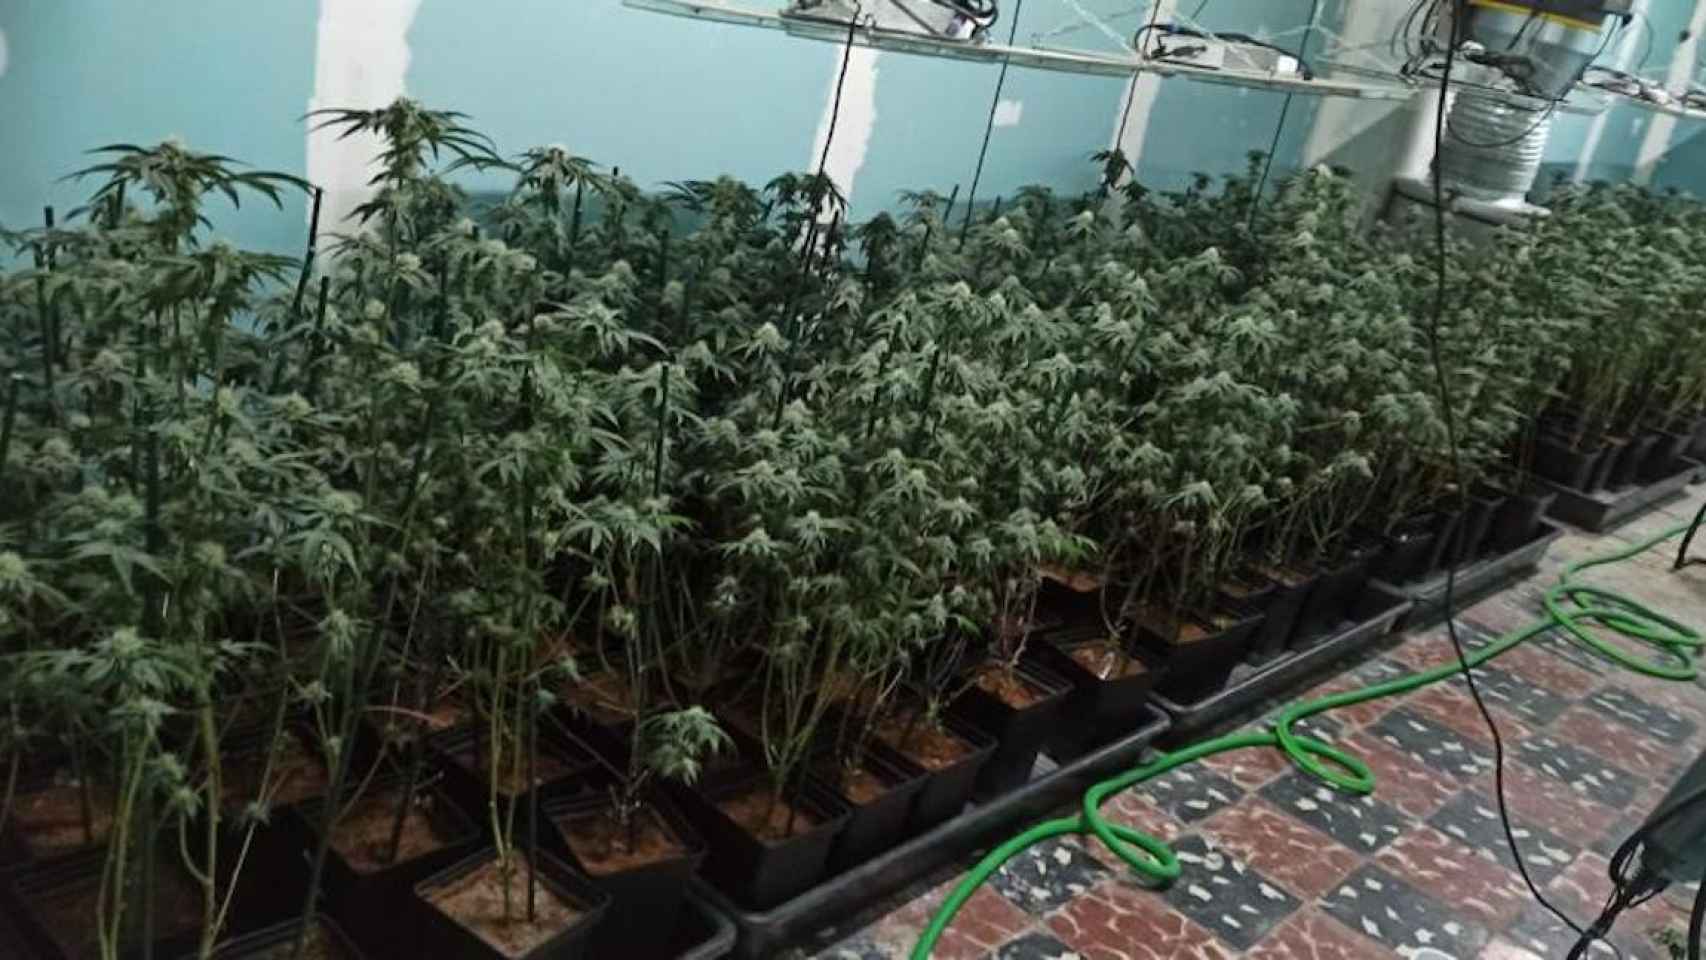 Plantación de marihuana ilegal en Santa Coloma